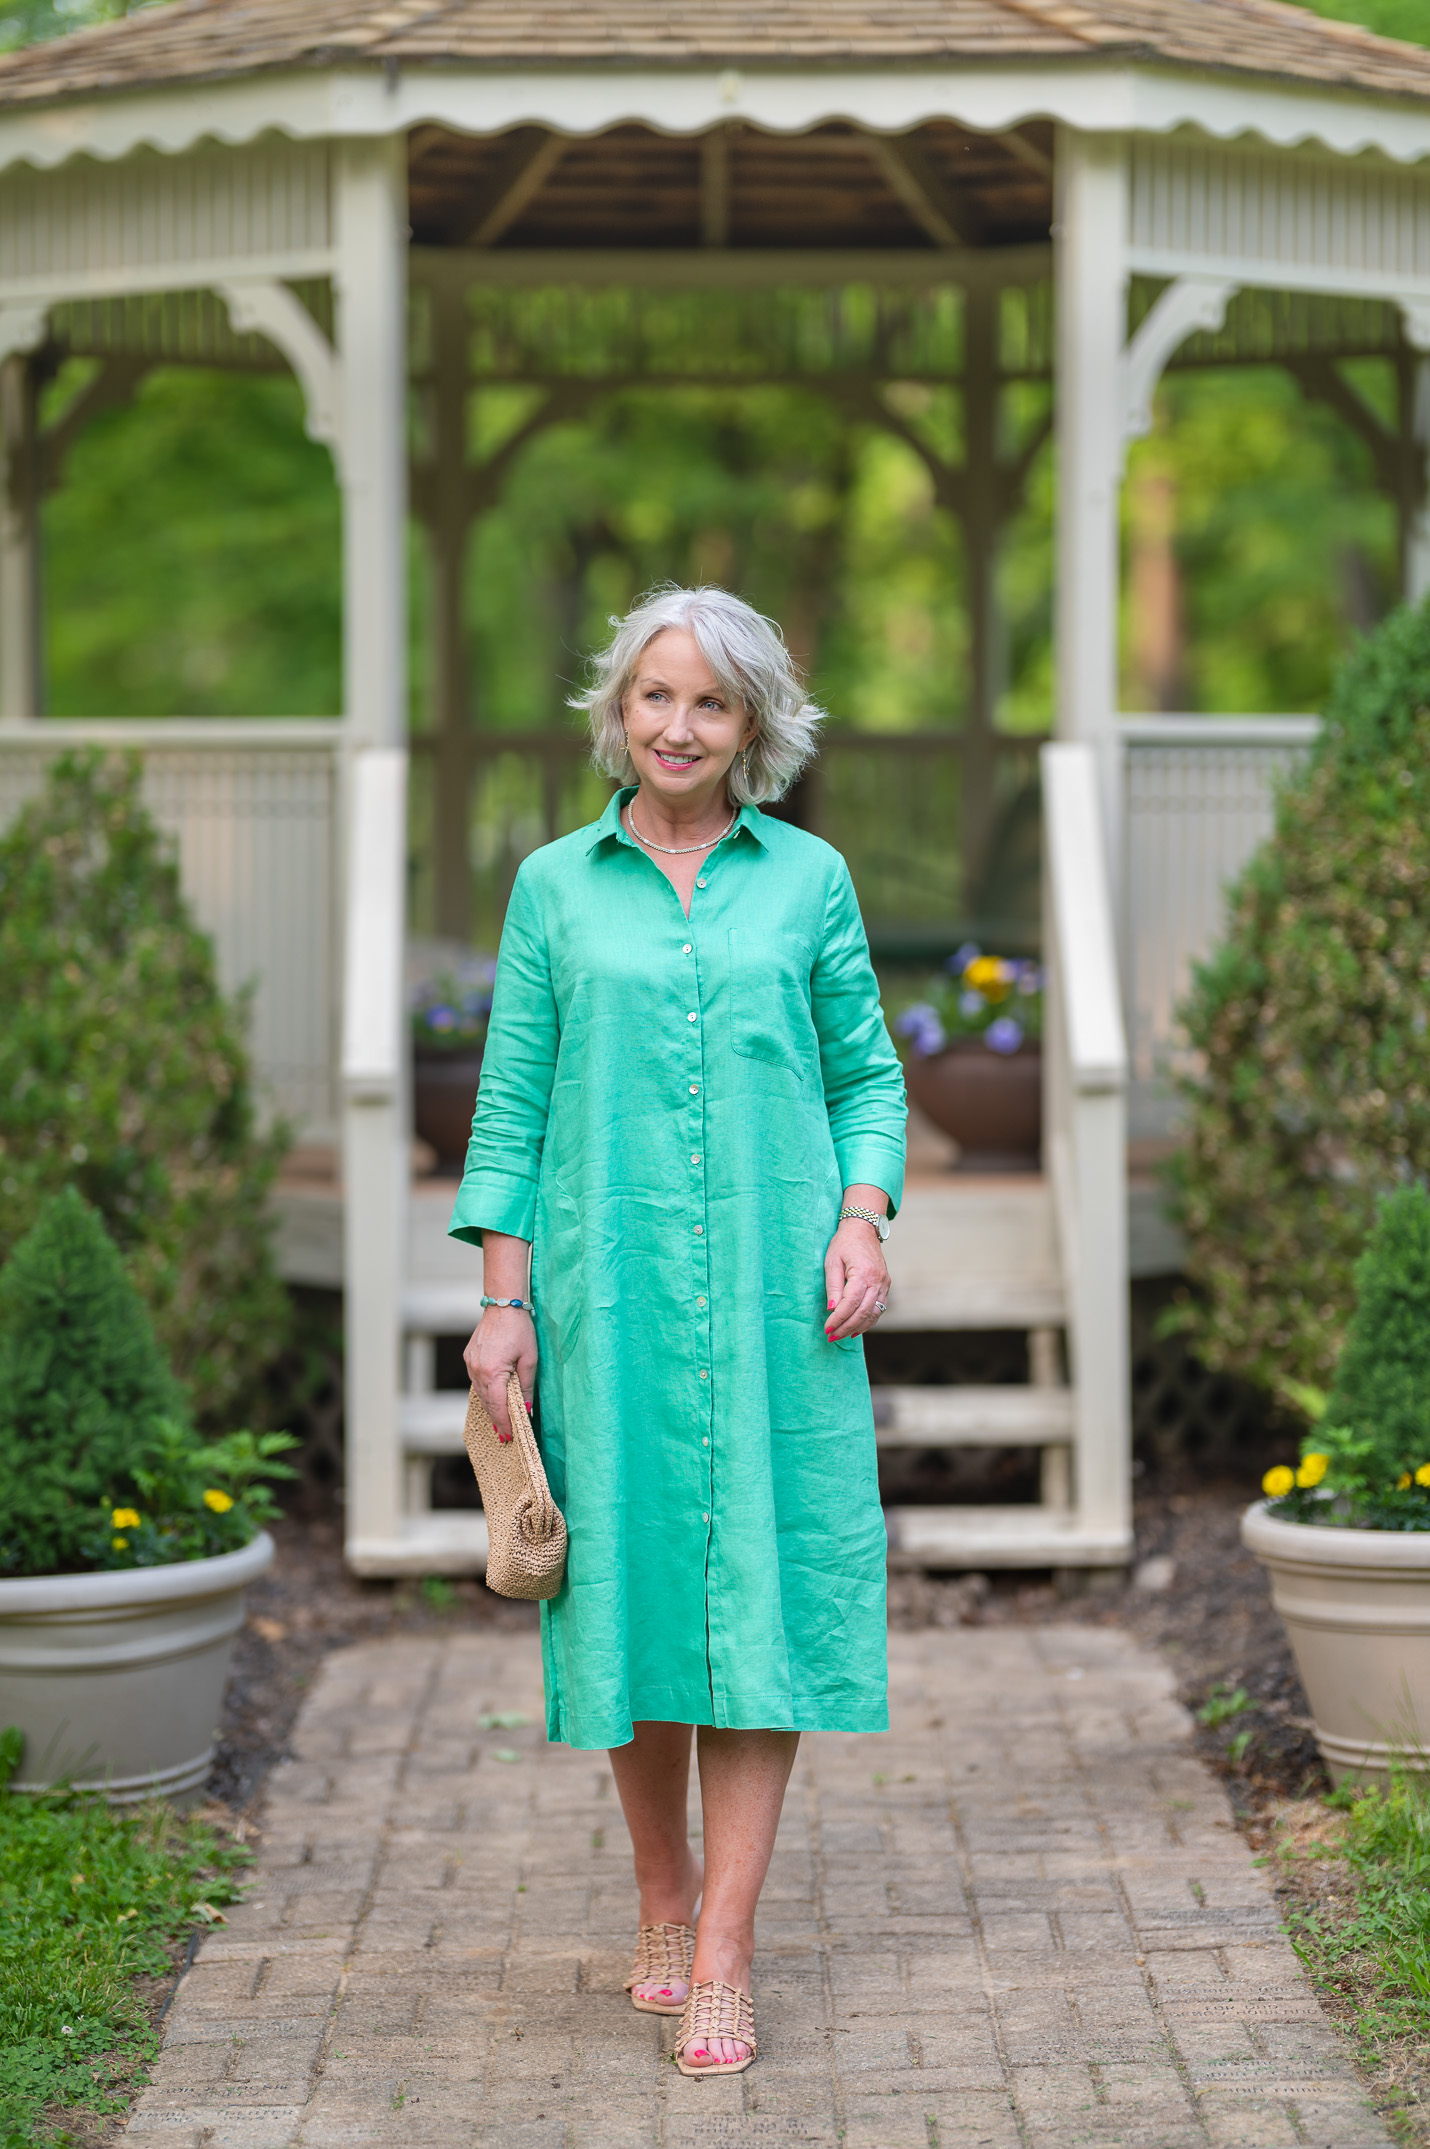 Green Linen Dress for Summer